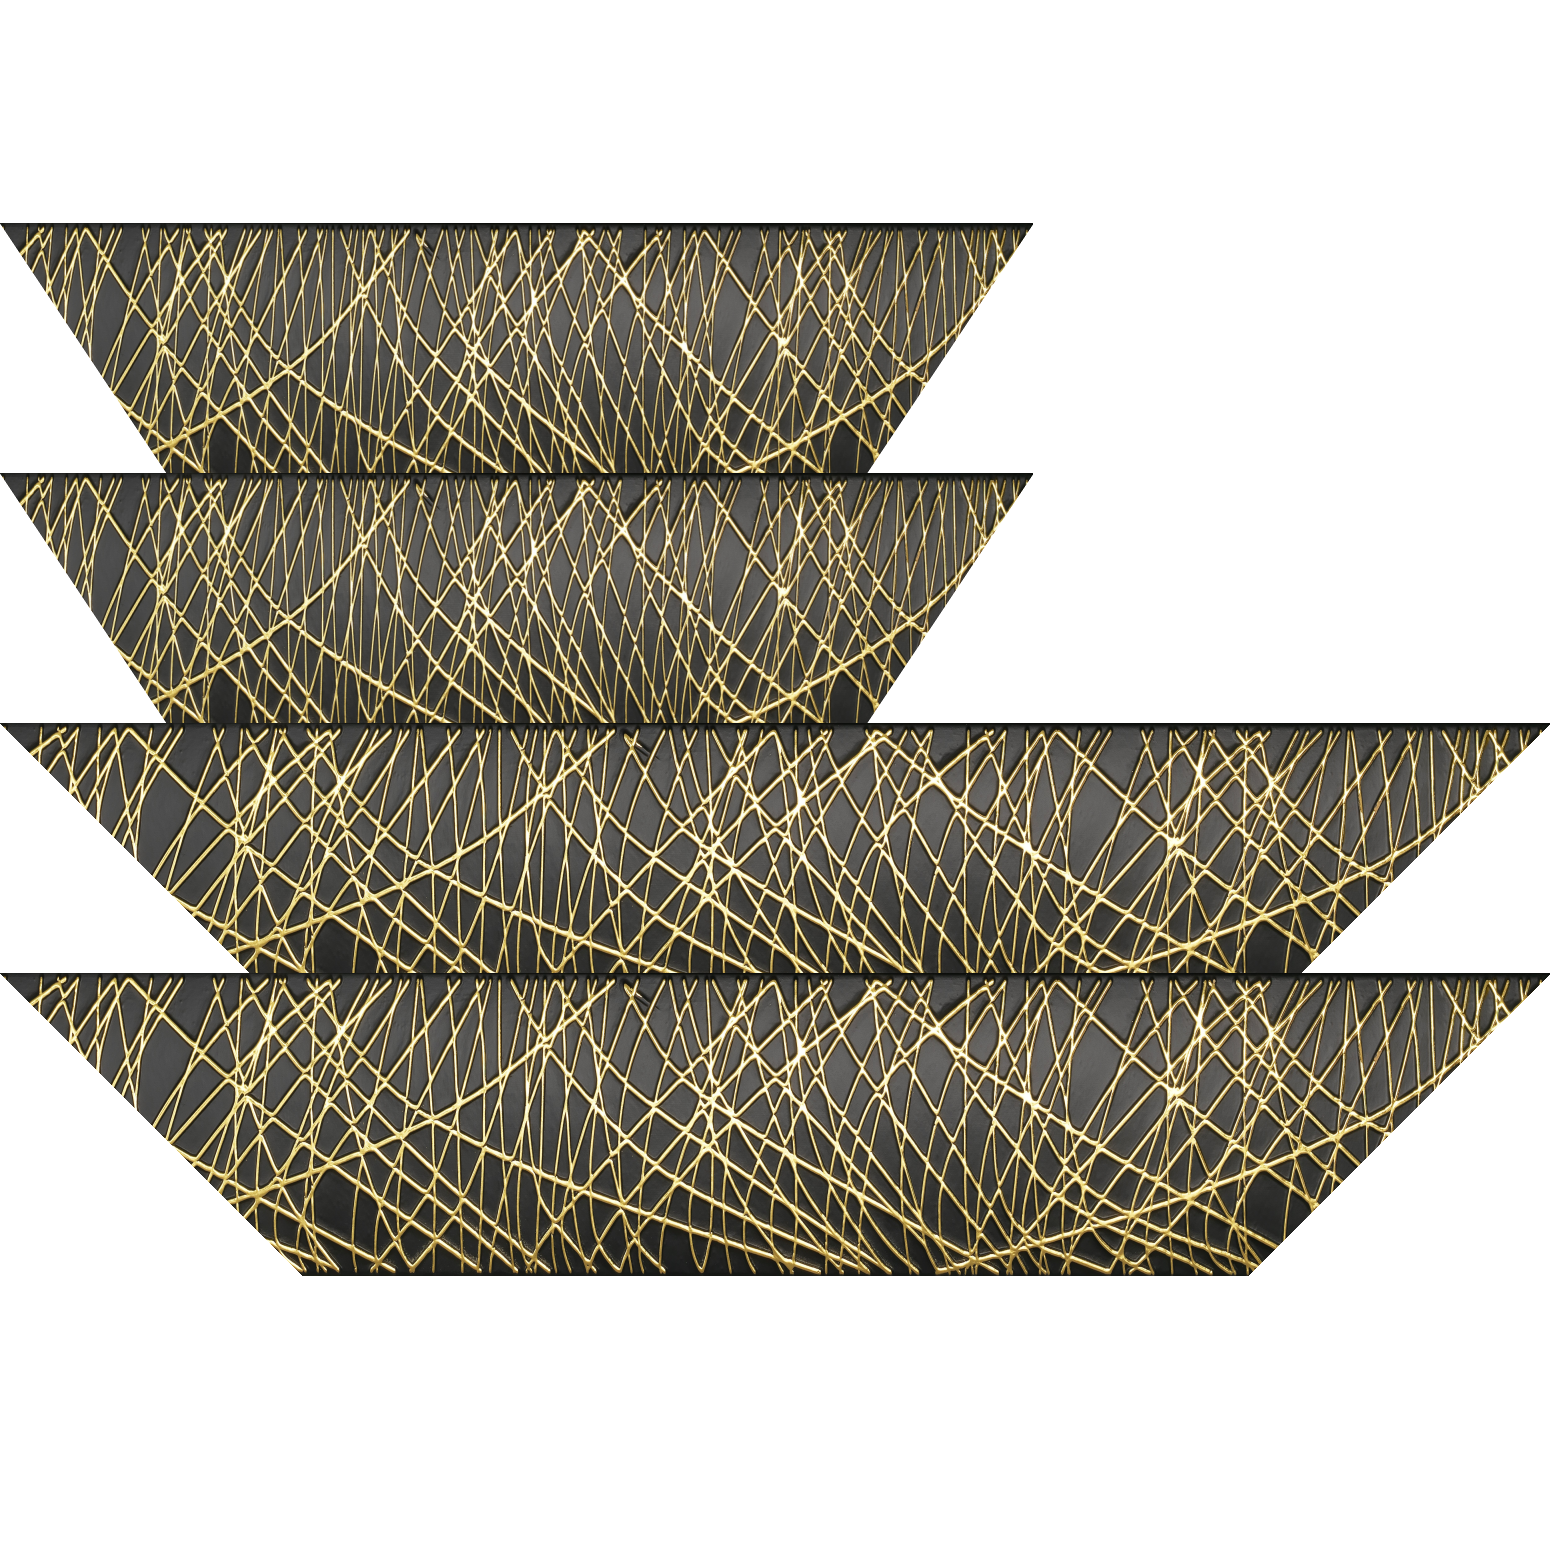 Baguette bois profil arrondi méplat largeur 9.9cm couleur noir satiné trait or en relief - 24x30